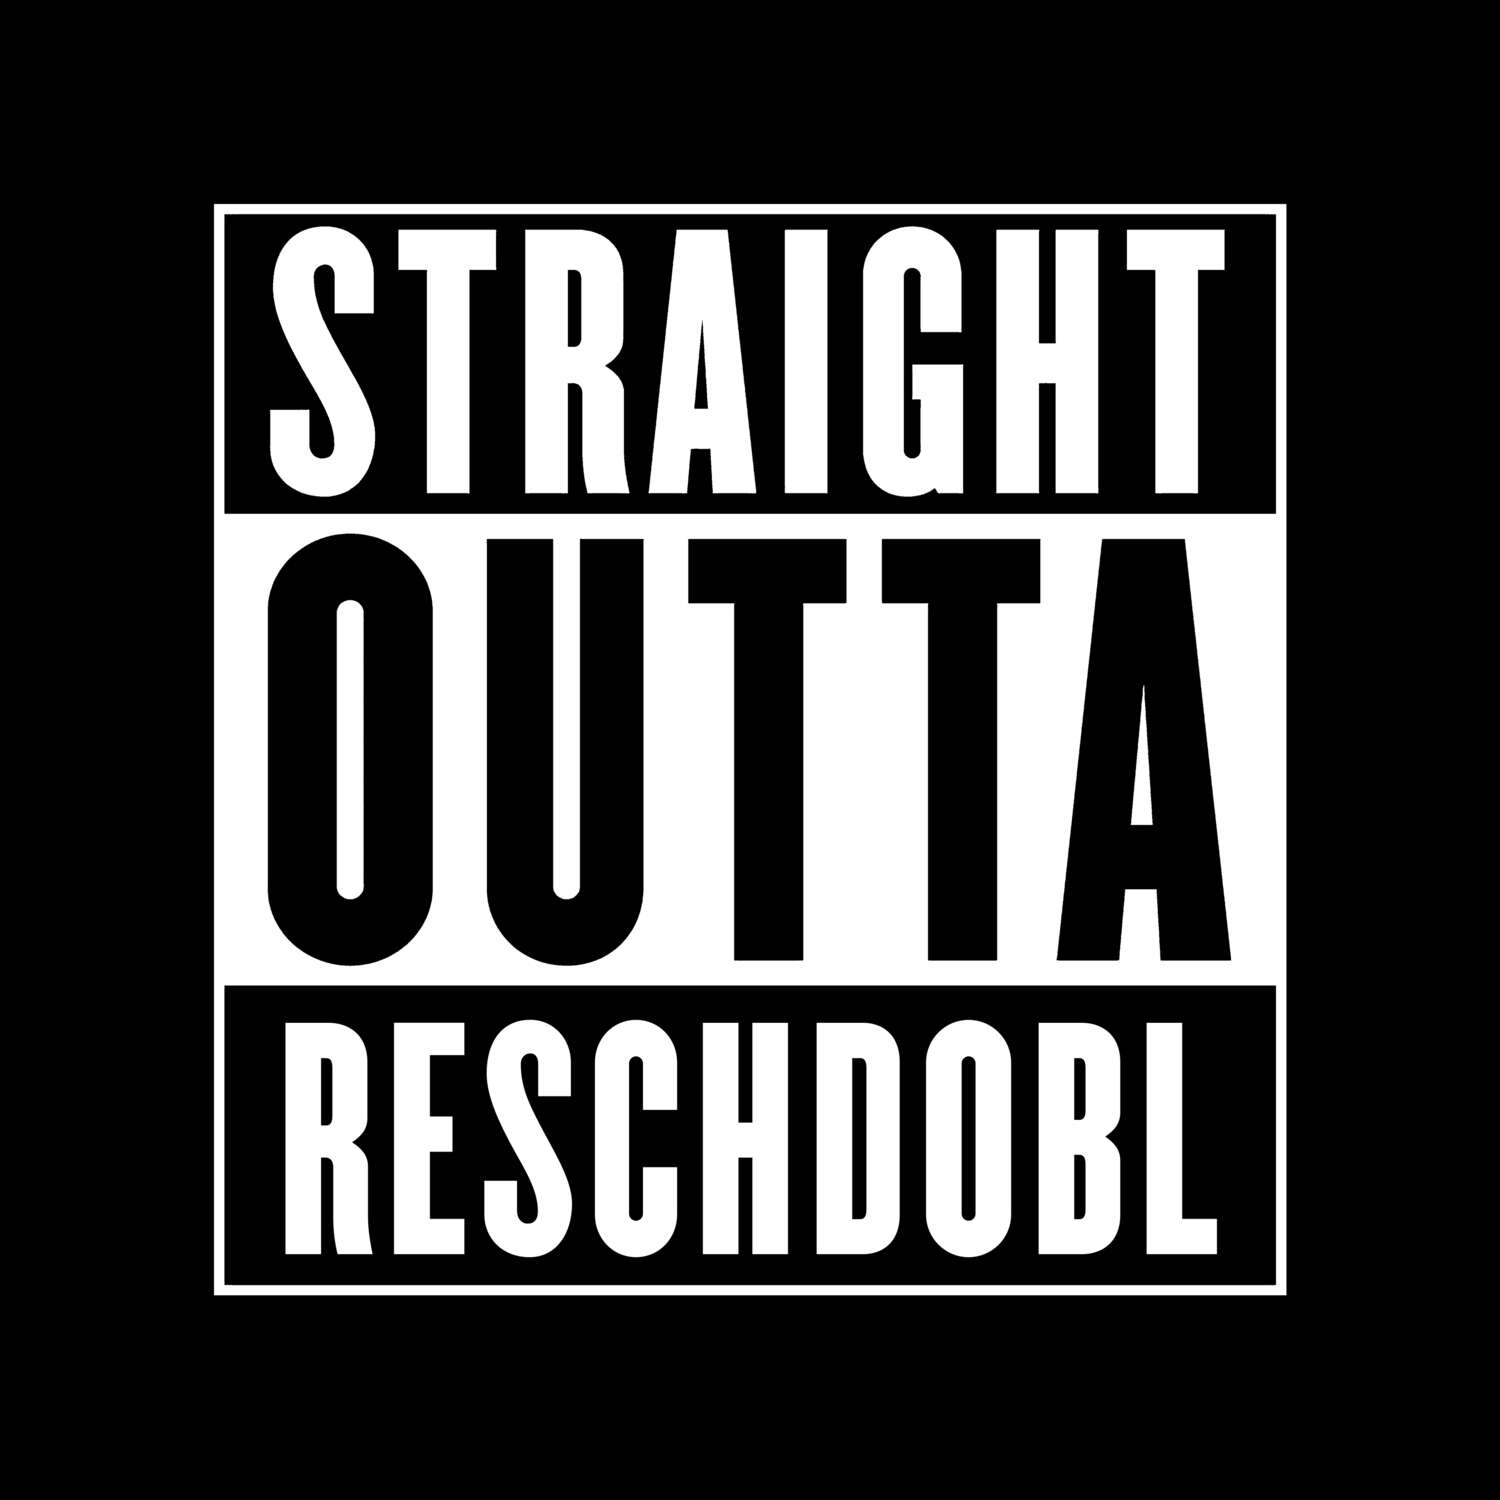 Reschdobl T-Shirt »Straight Outta«